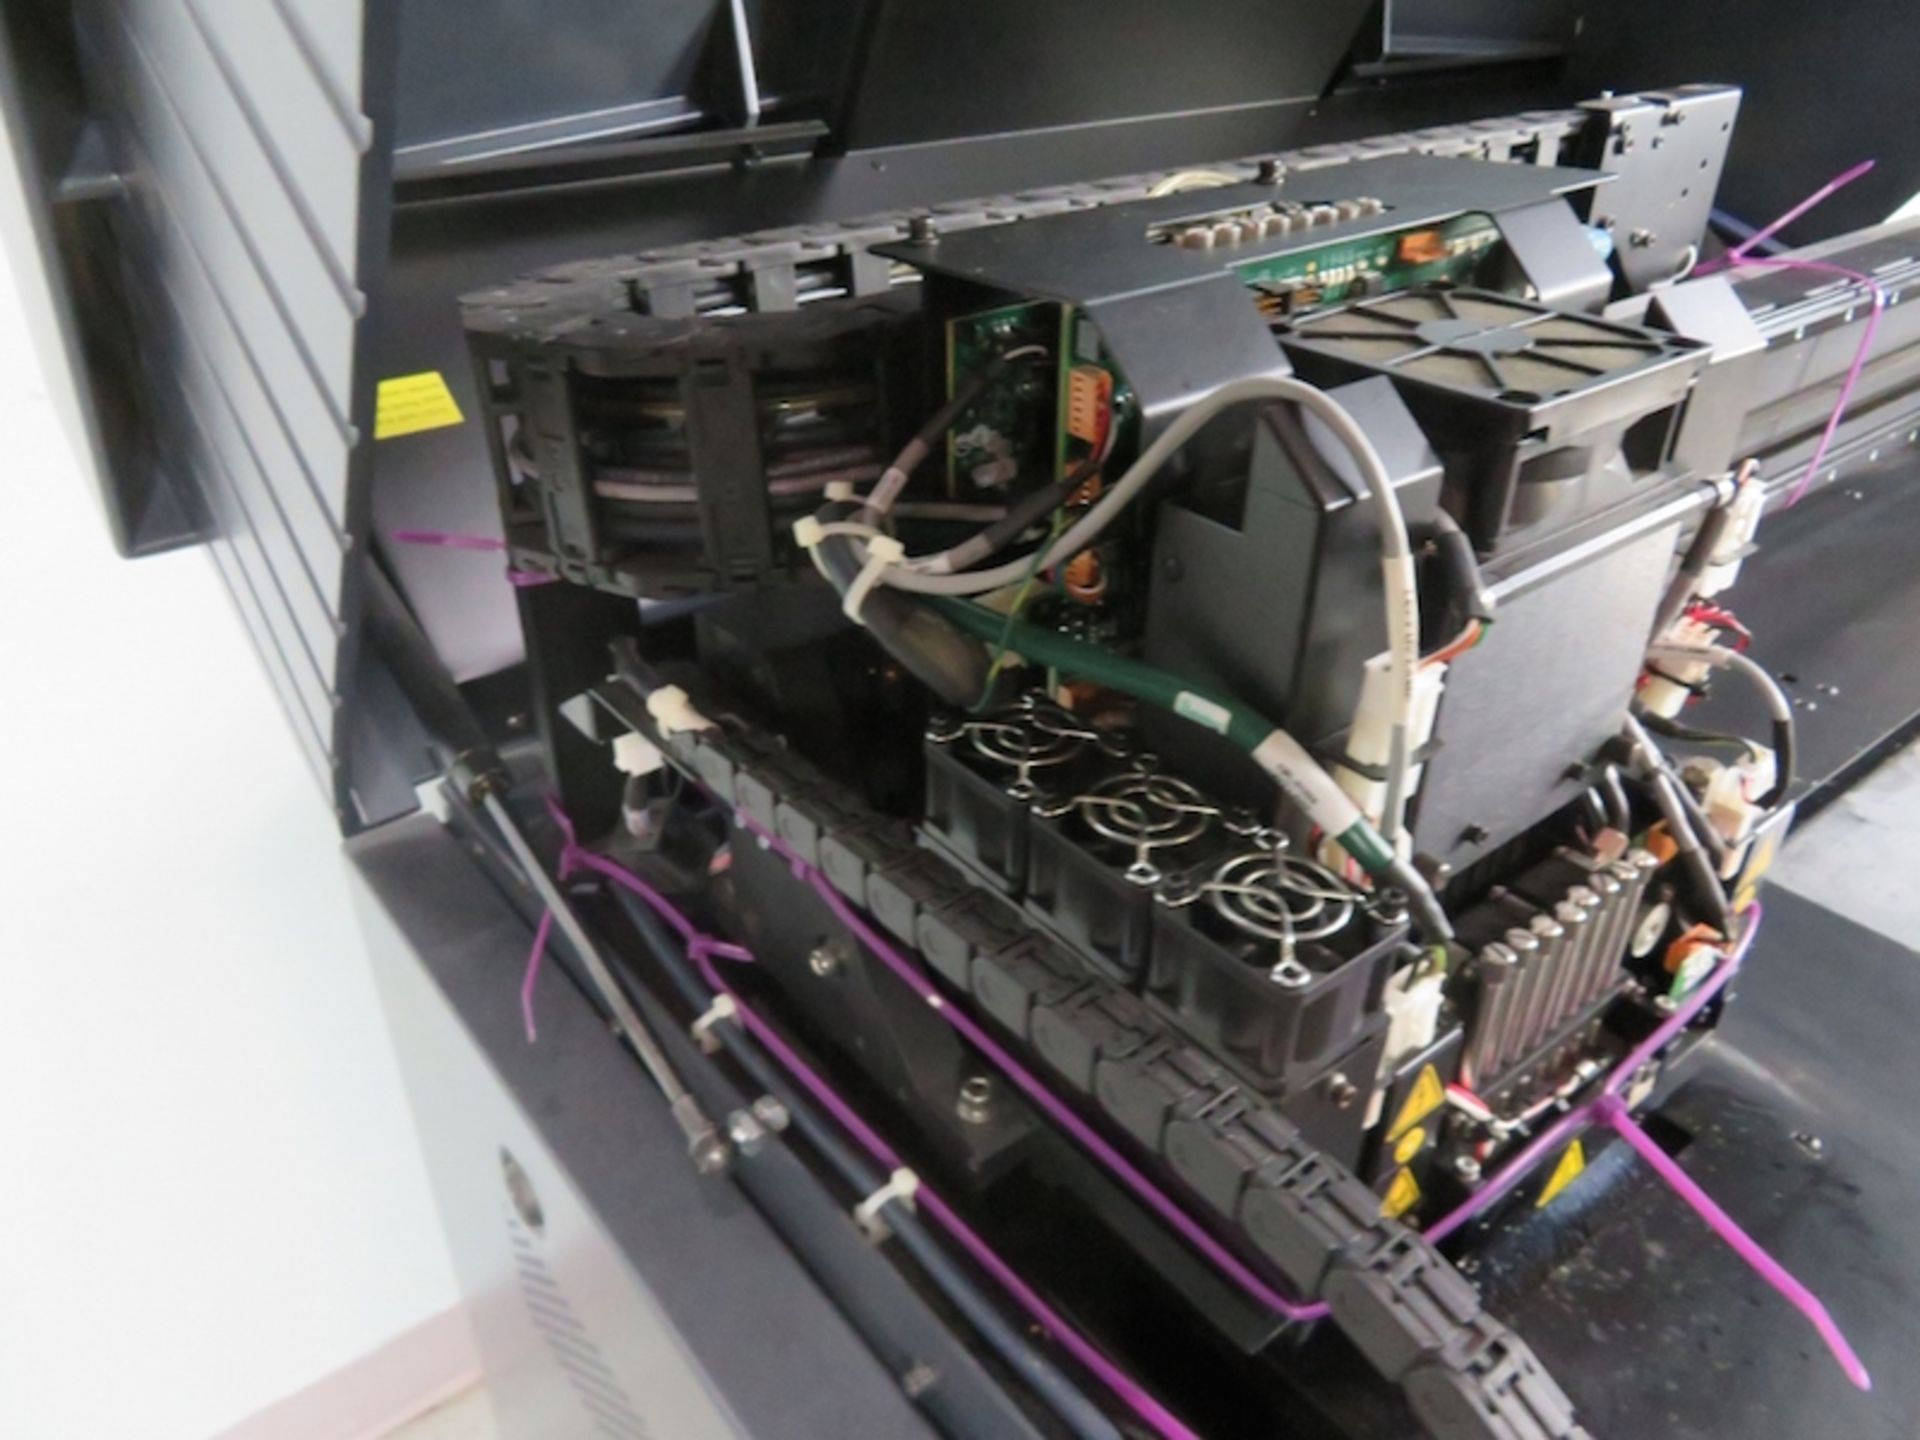 Stratsys Eden 350V 3D Printer, New in 2014 - Image 9 of 26